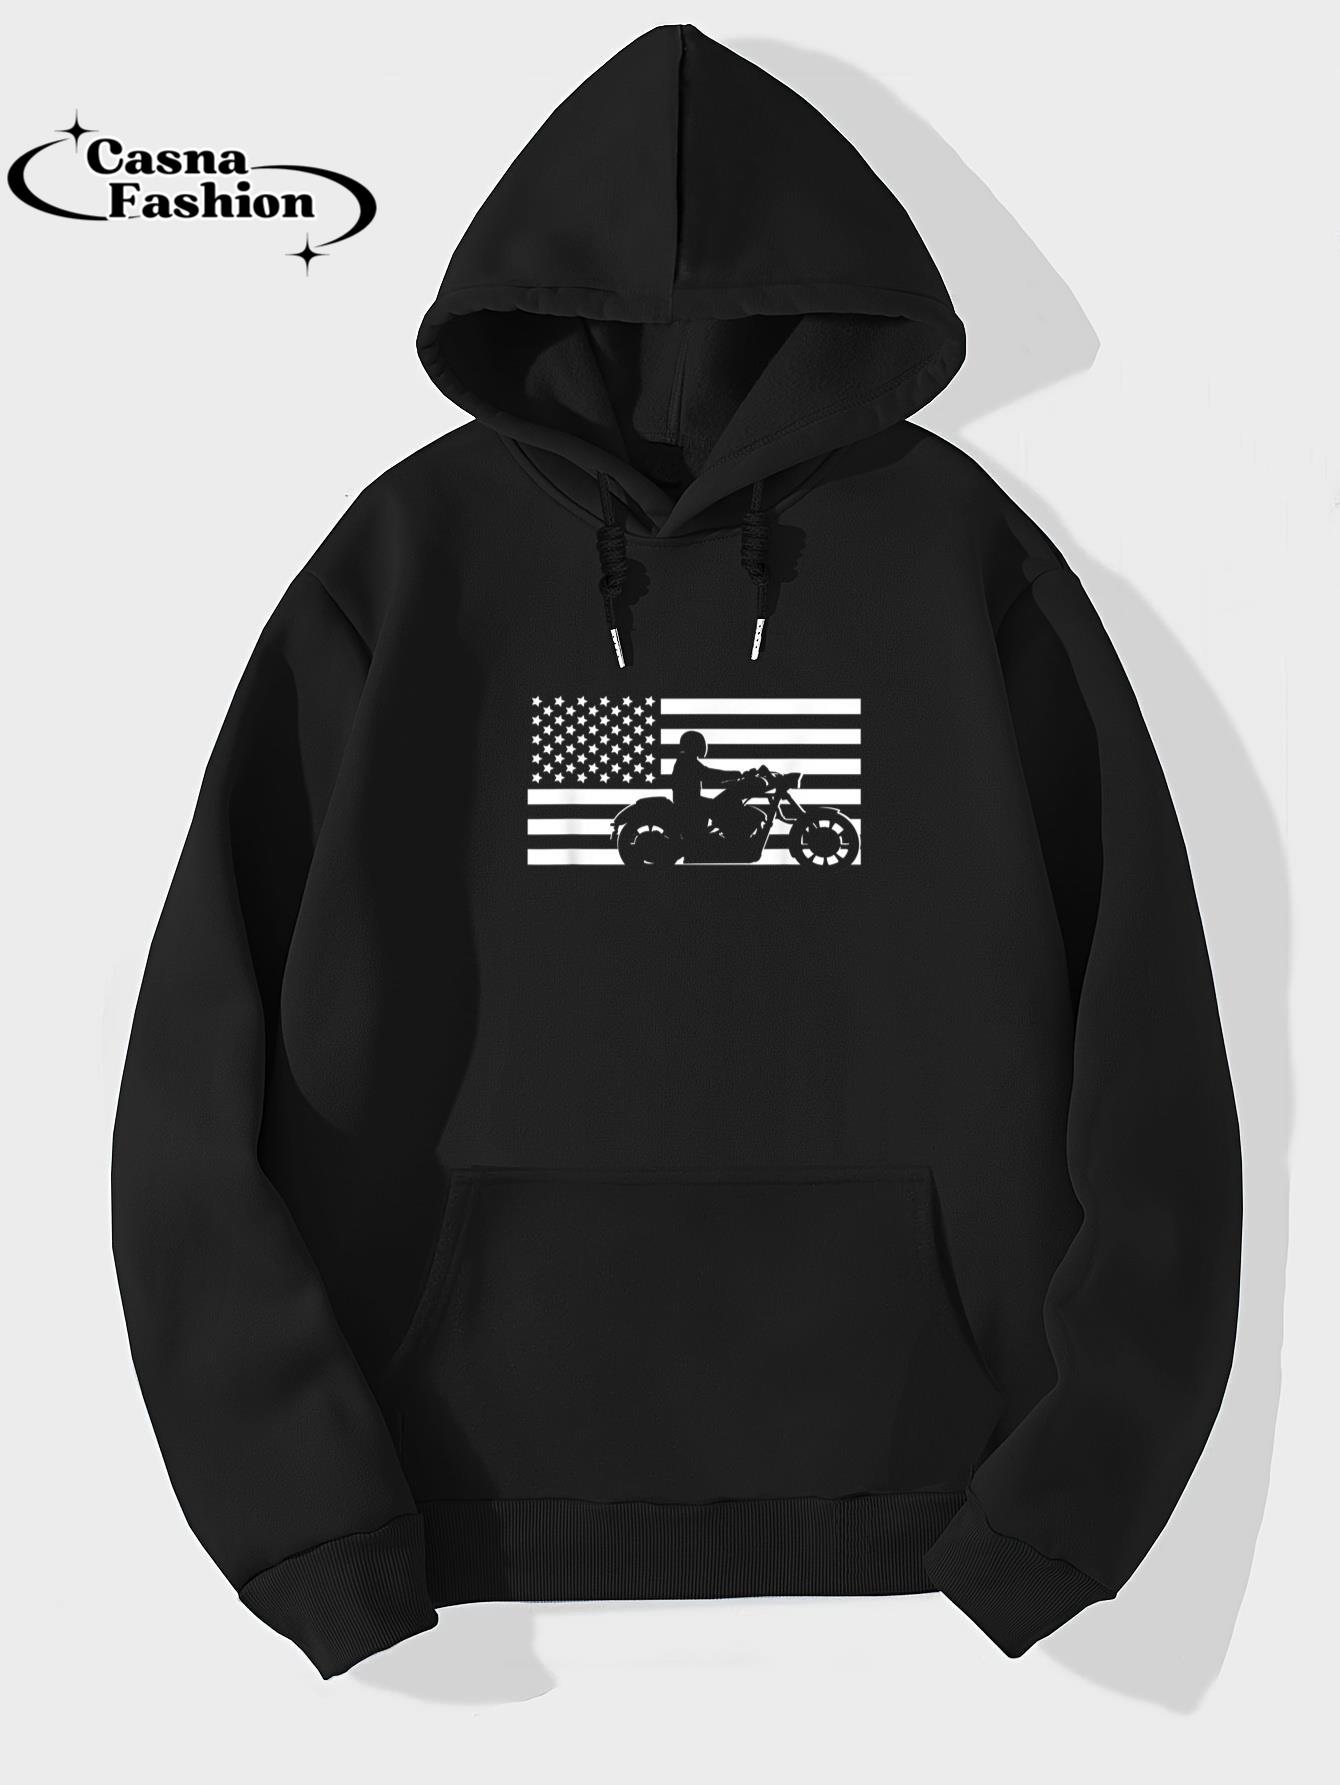 casnafashion_Hoodie_American Flag Motorcycle Biker T-Shirt_hoodie_black hoodie